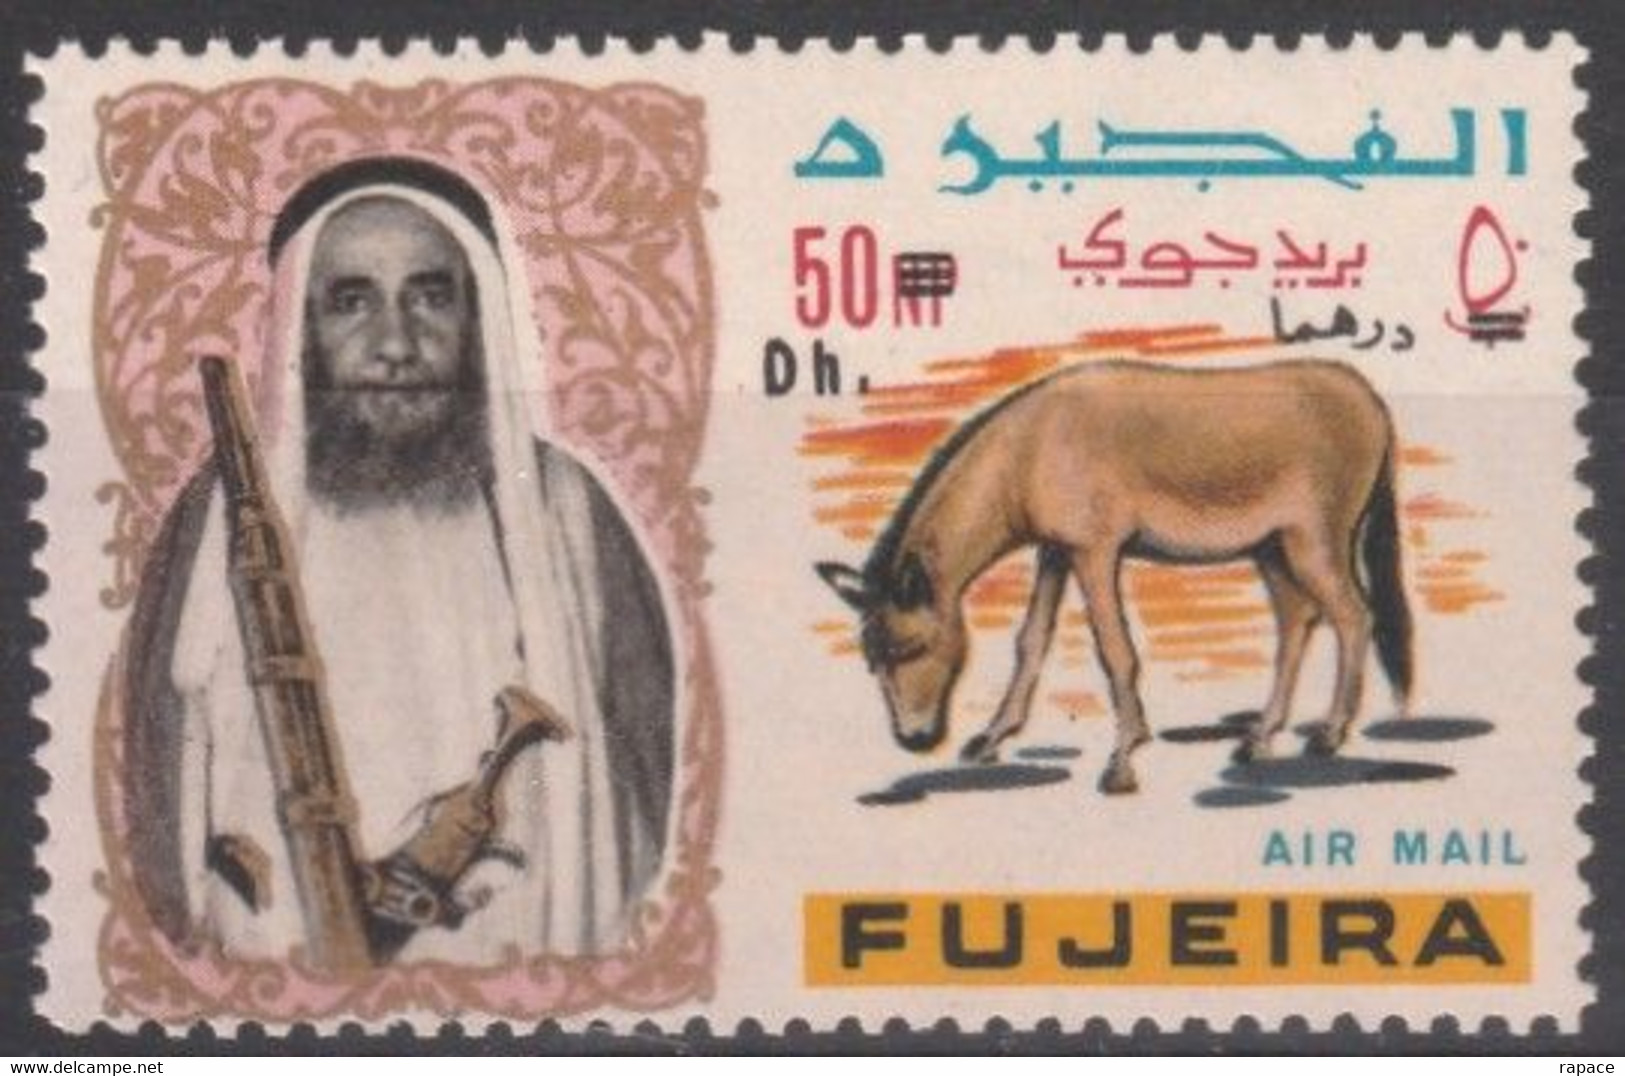 Fujeira 1967 Timbre Surchargé - Onagre De Perse (Equus Hemionus Onager) - Donkeys